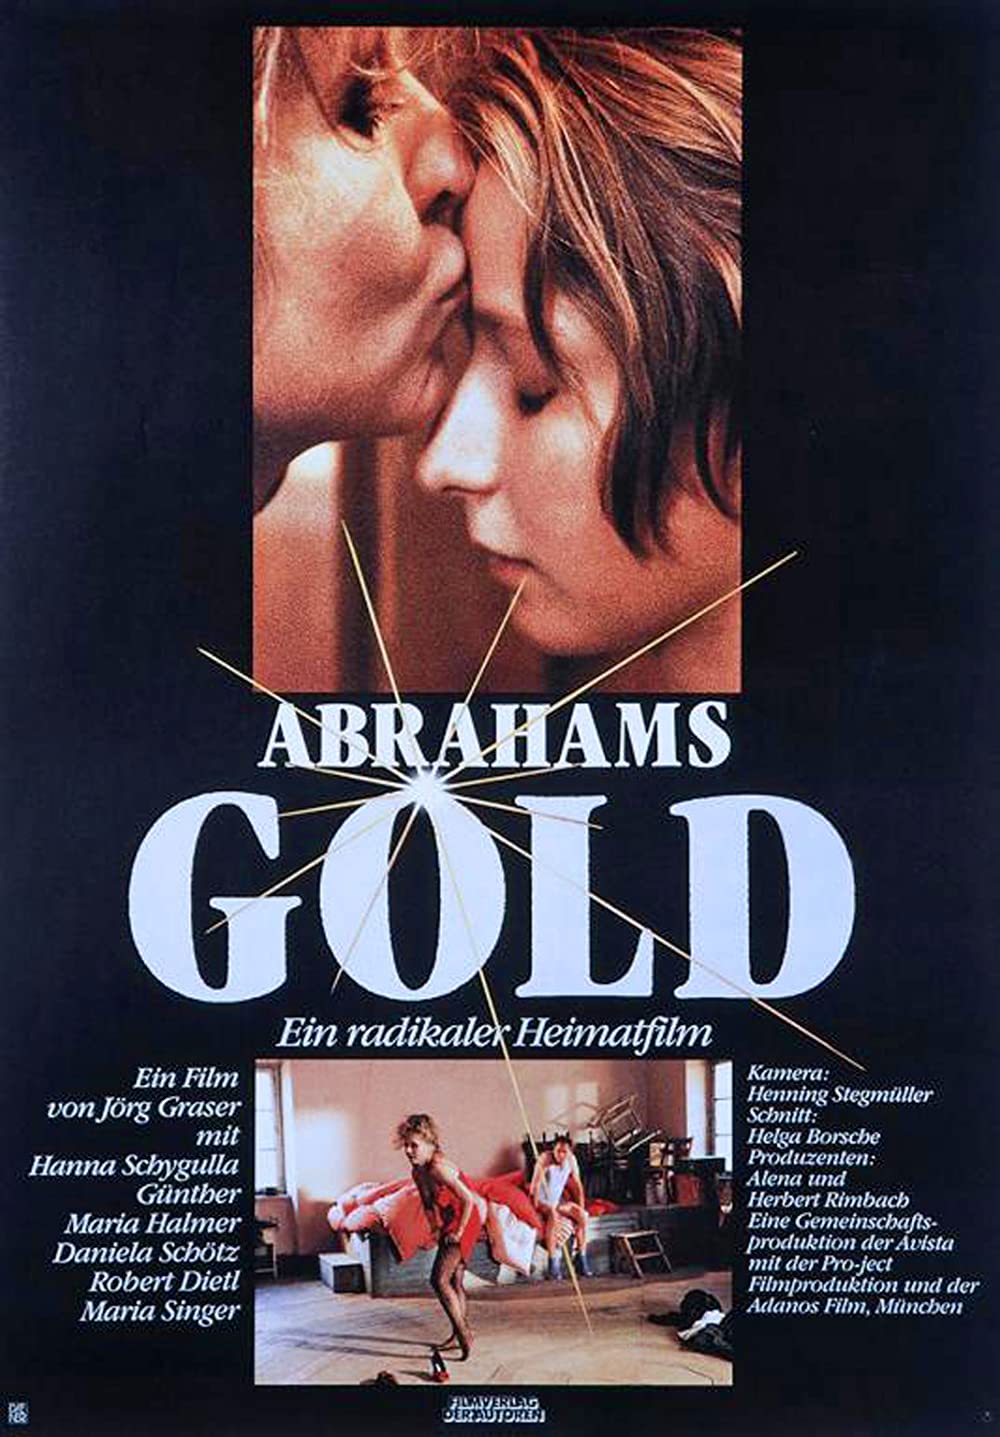 Filmbeschreibung zu Abrahams Gold